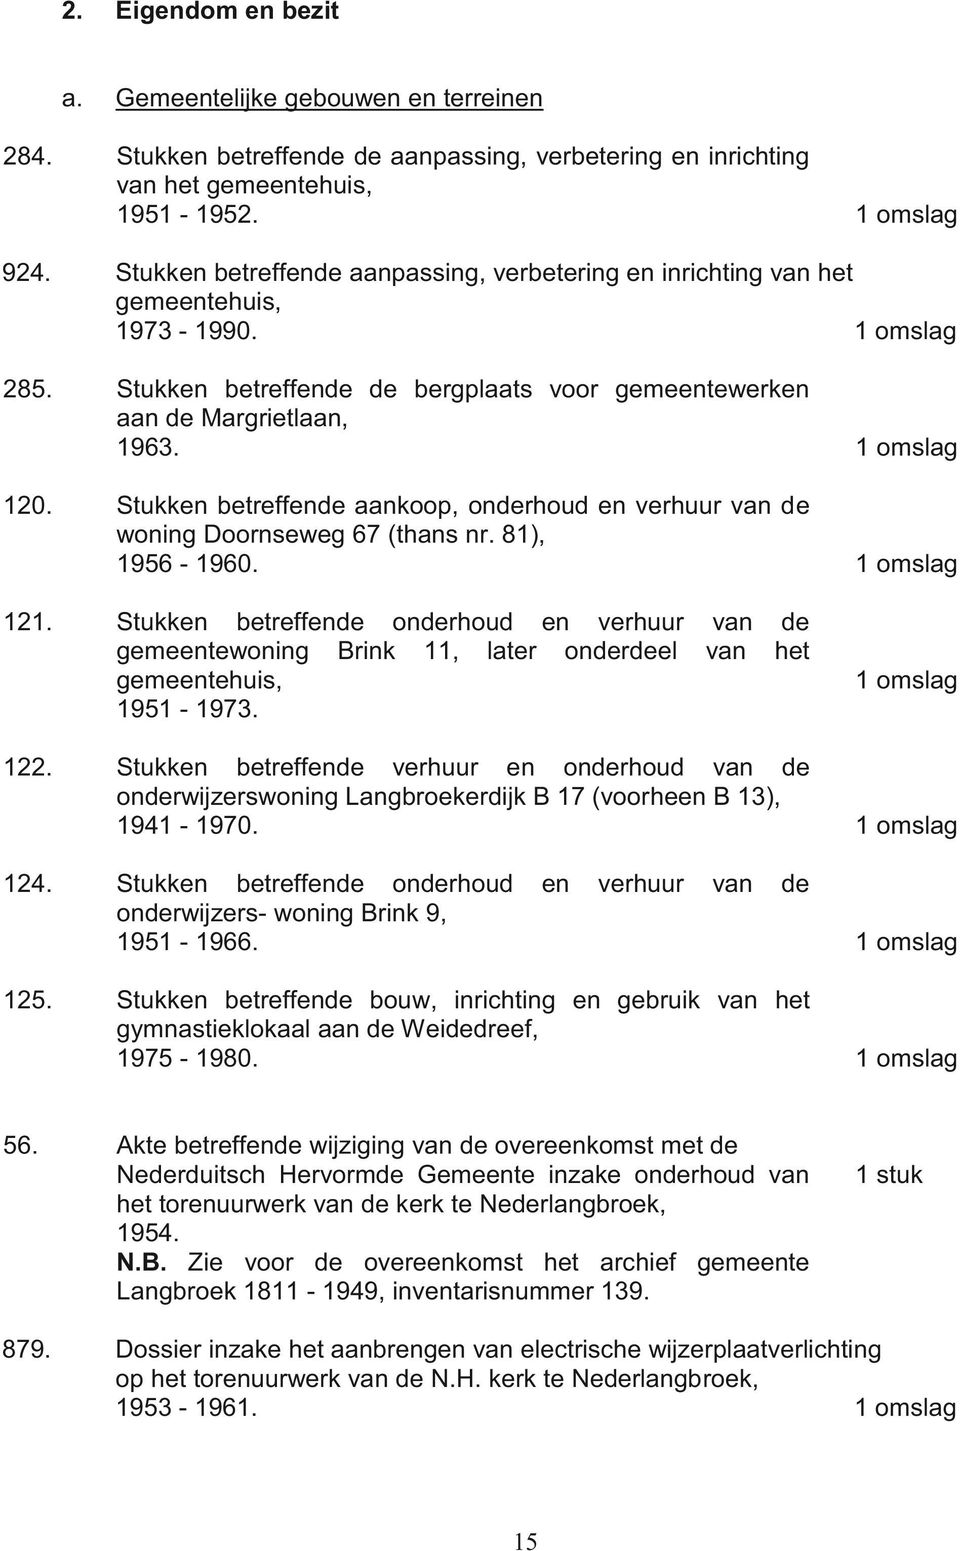 Stukken betreffende aankoop, onderhoud en verhuur van de woning Doornseweg 67 (thans nr. 81), 1956-1960. 121.